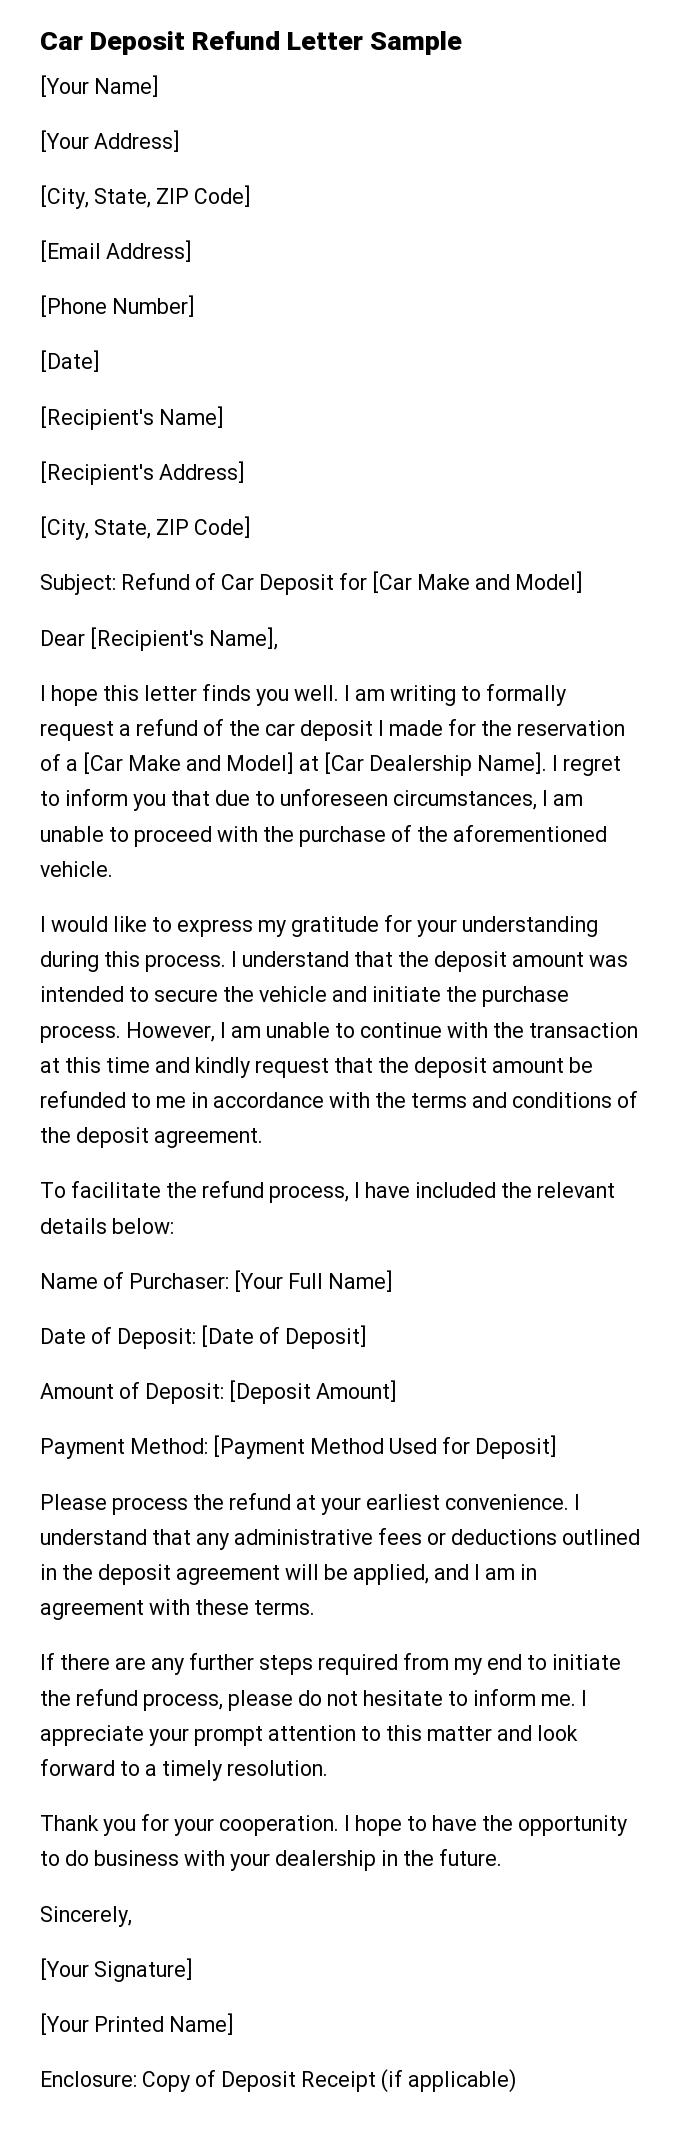 Car Deposit Refund Letter Sample